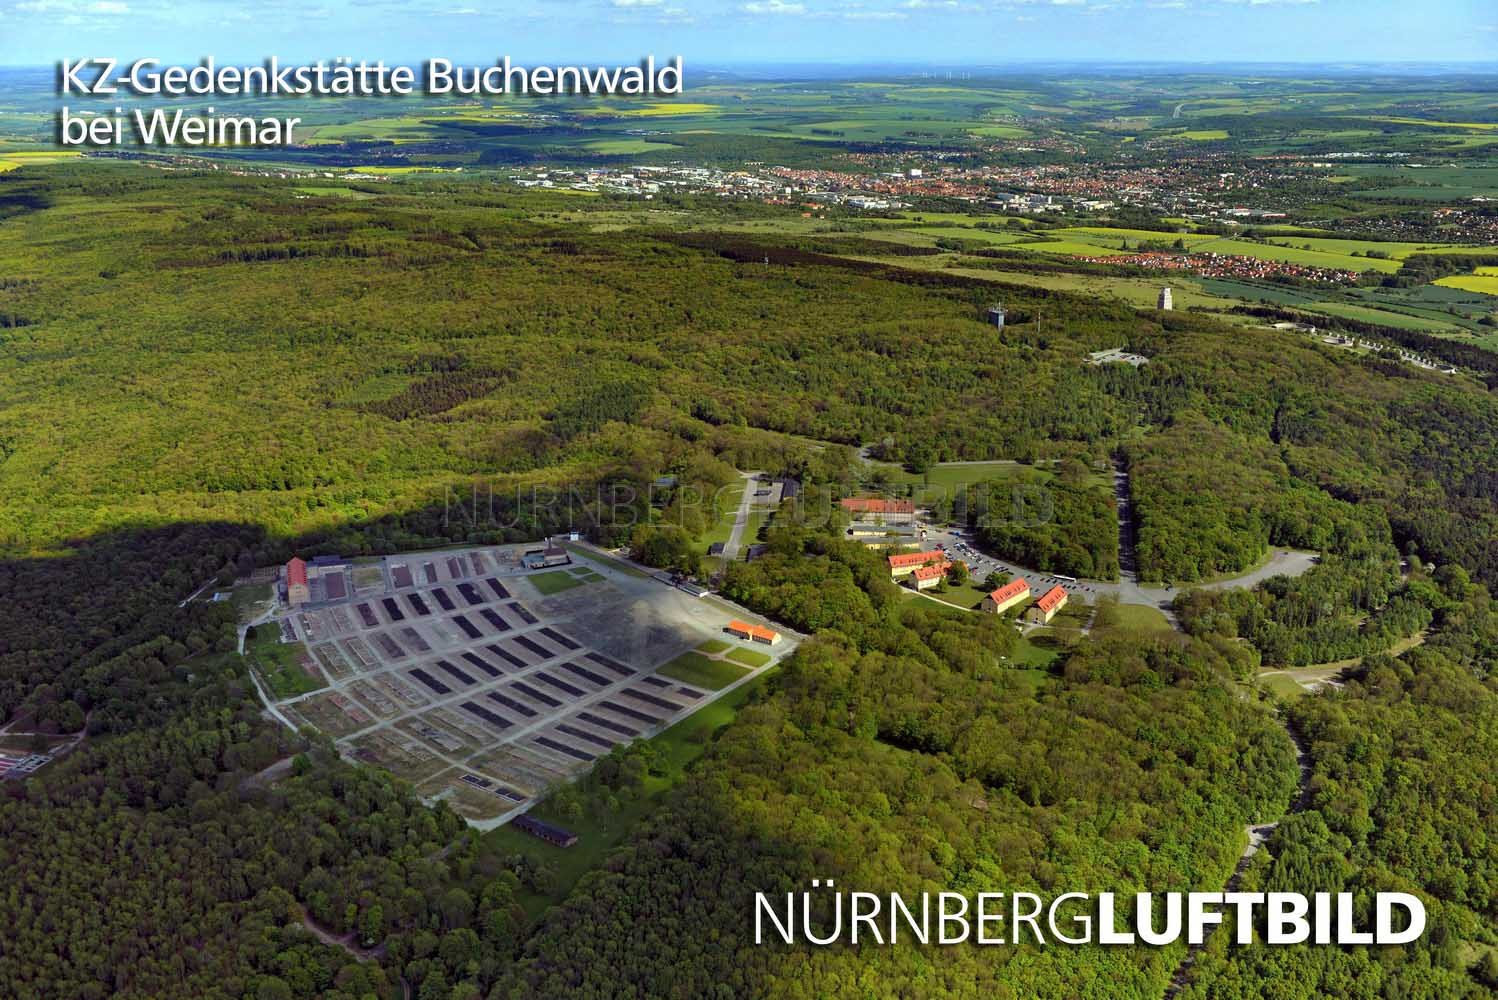 KZ-Gedenkstätte Buchenwald, Blick von Nordwesten, Luftbild